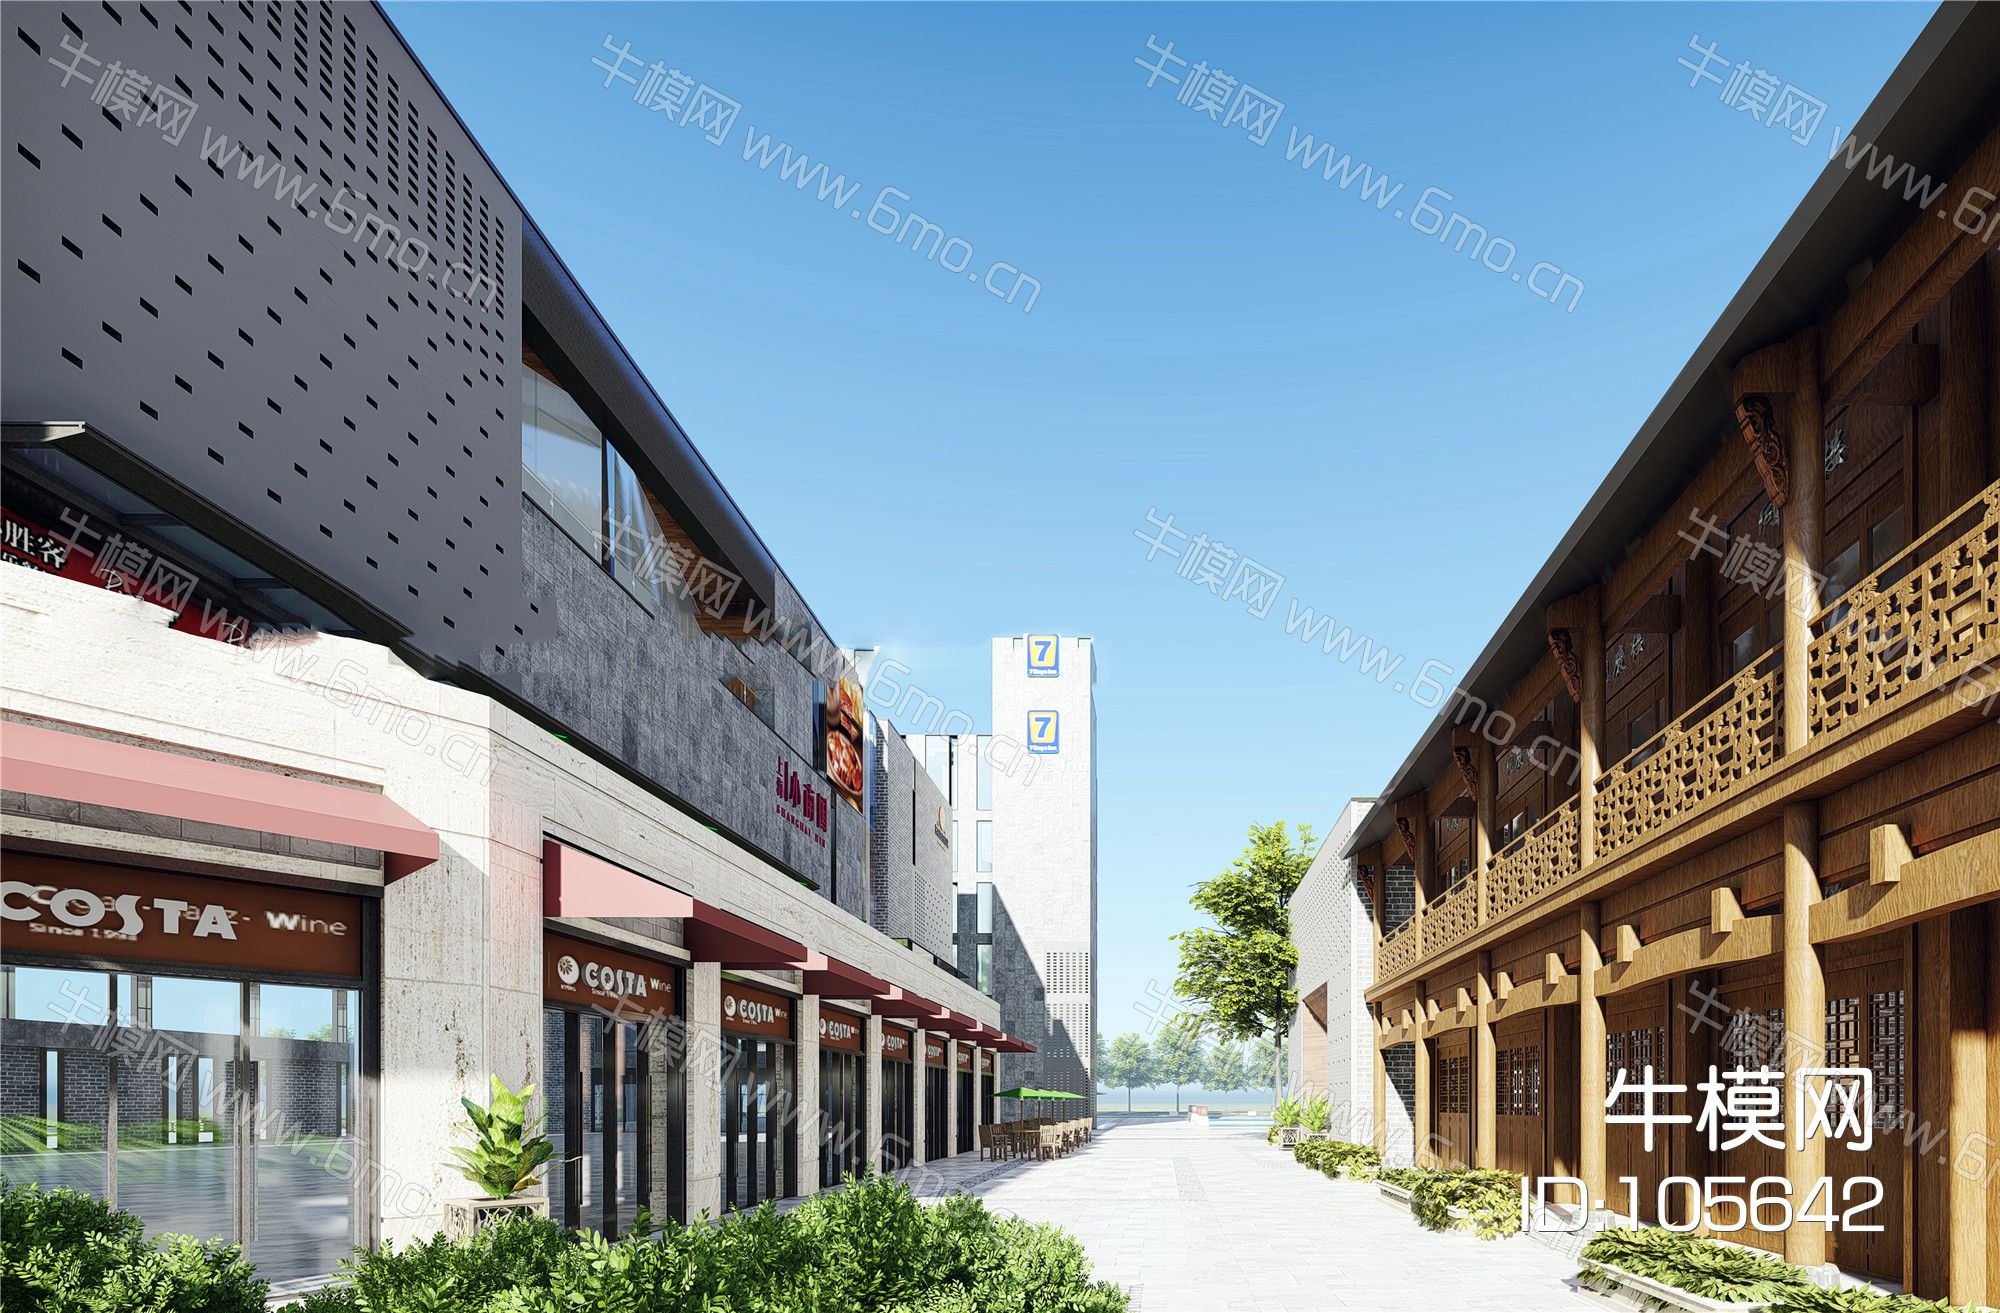 合肥包河区罍街改造现代中式商业街安徽省古建园林规划设计研究院院